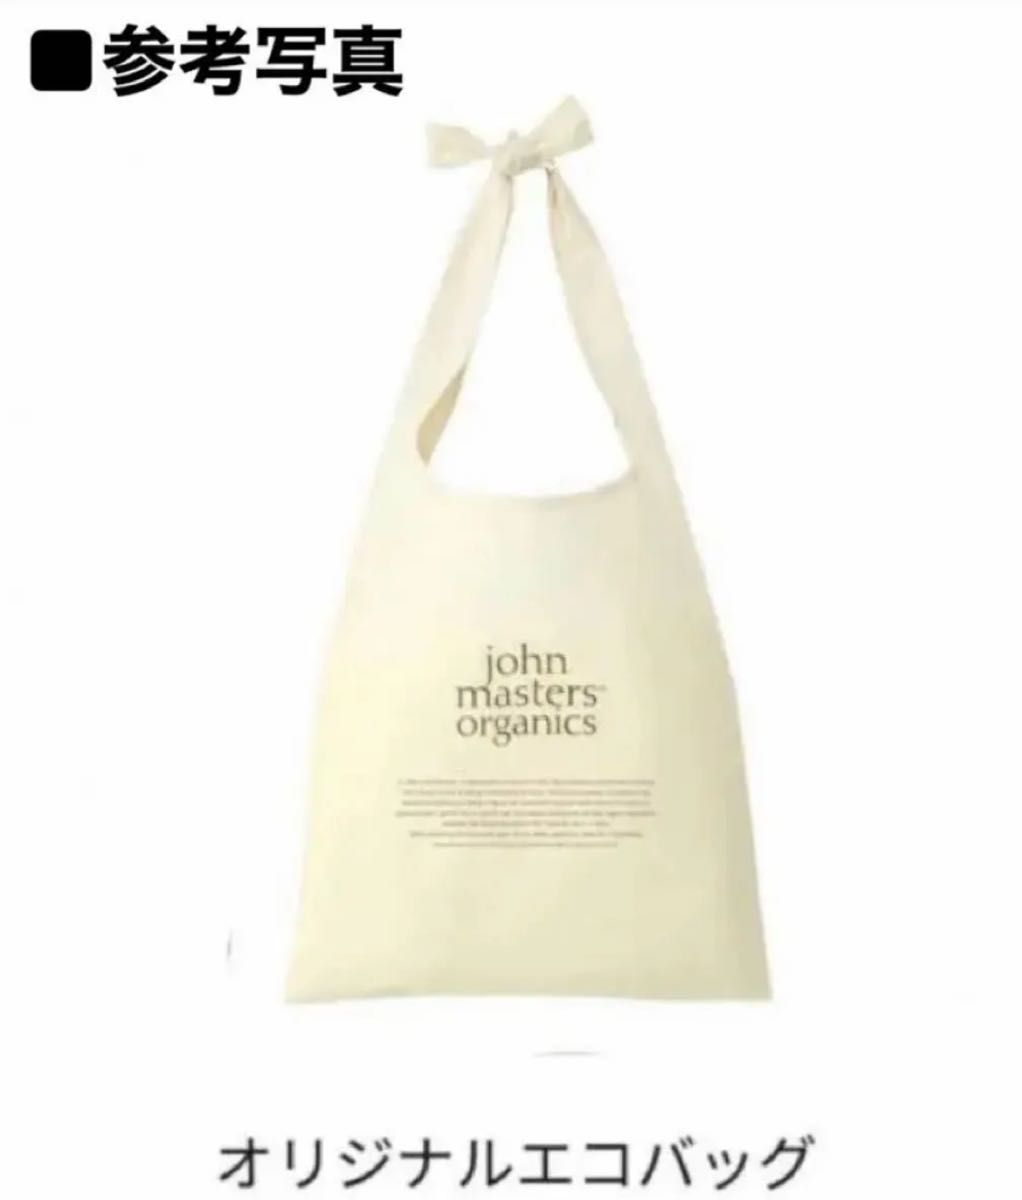 【未使用】john masters organicsジョンマスターオーガニック オリジナルエコバッグ&フェイスタオル2点set